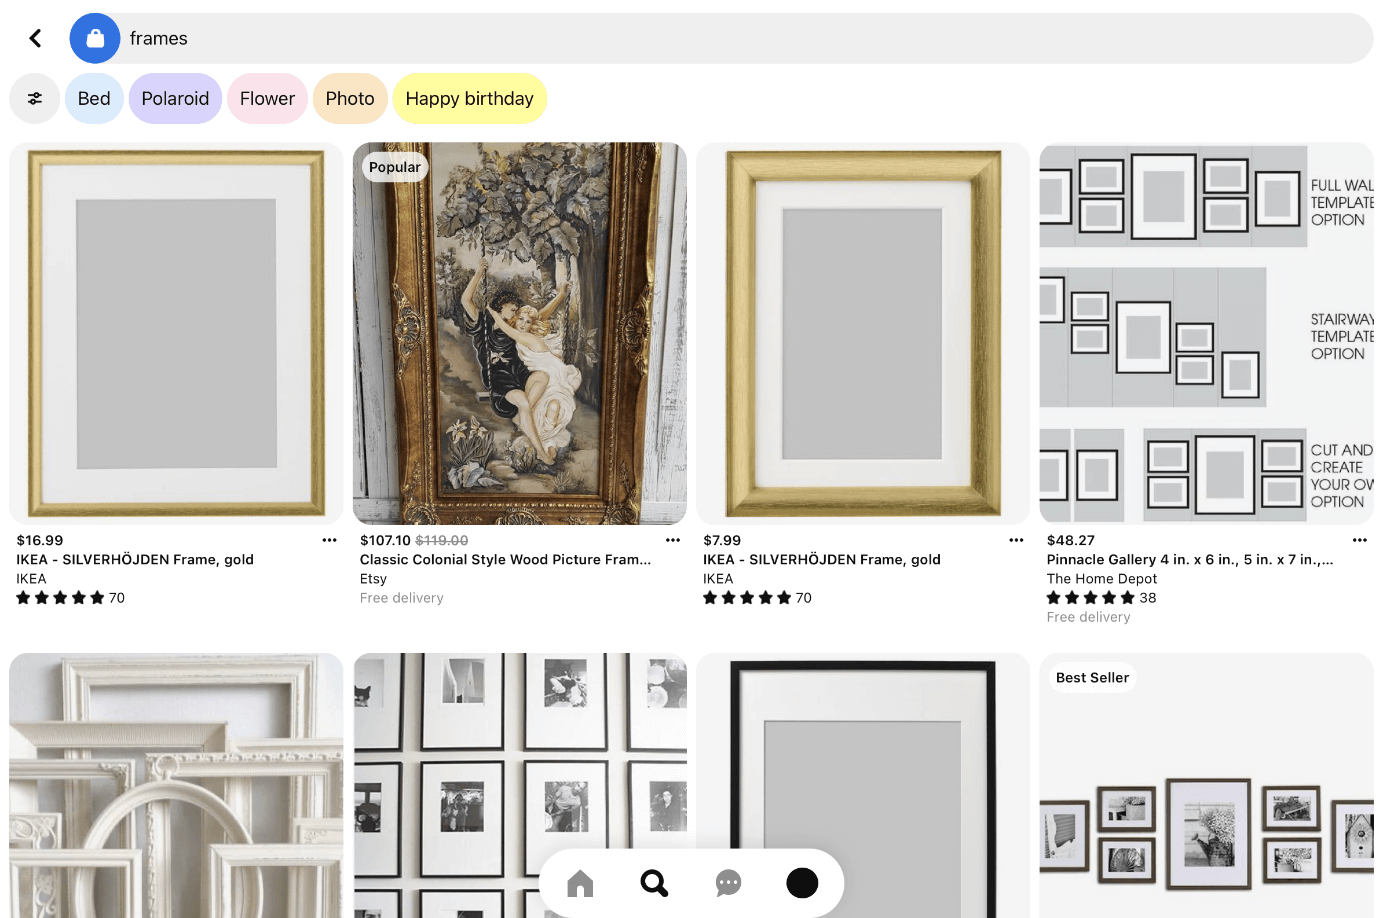 Captura de pantalla de iPad de la búsqueda “frames”en la función de compra de Pinterest